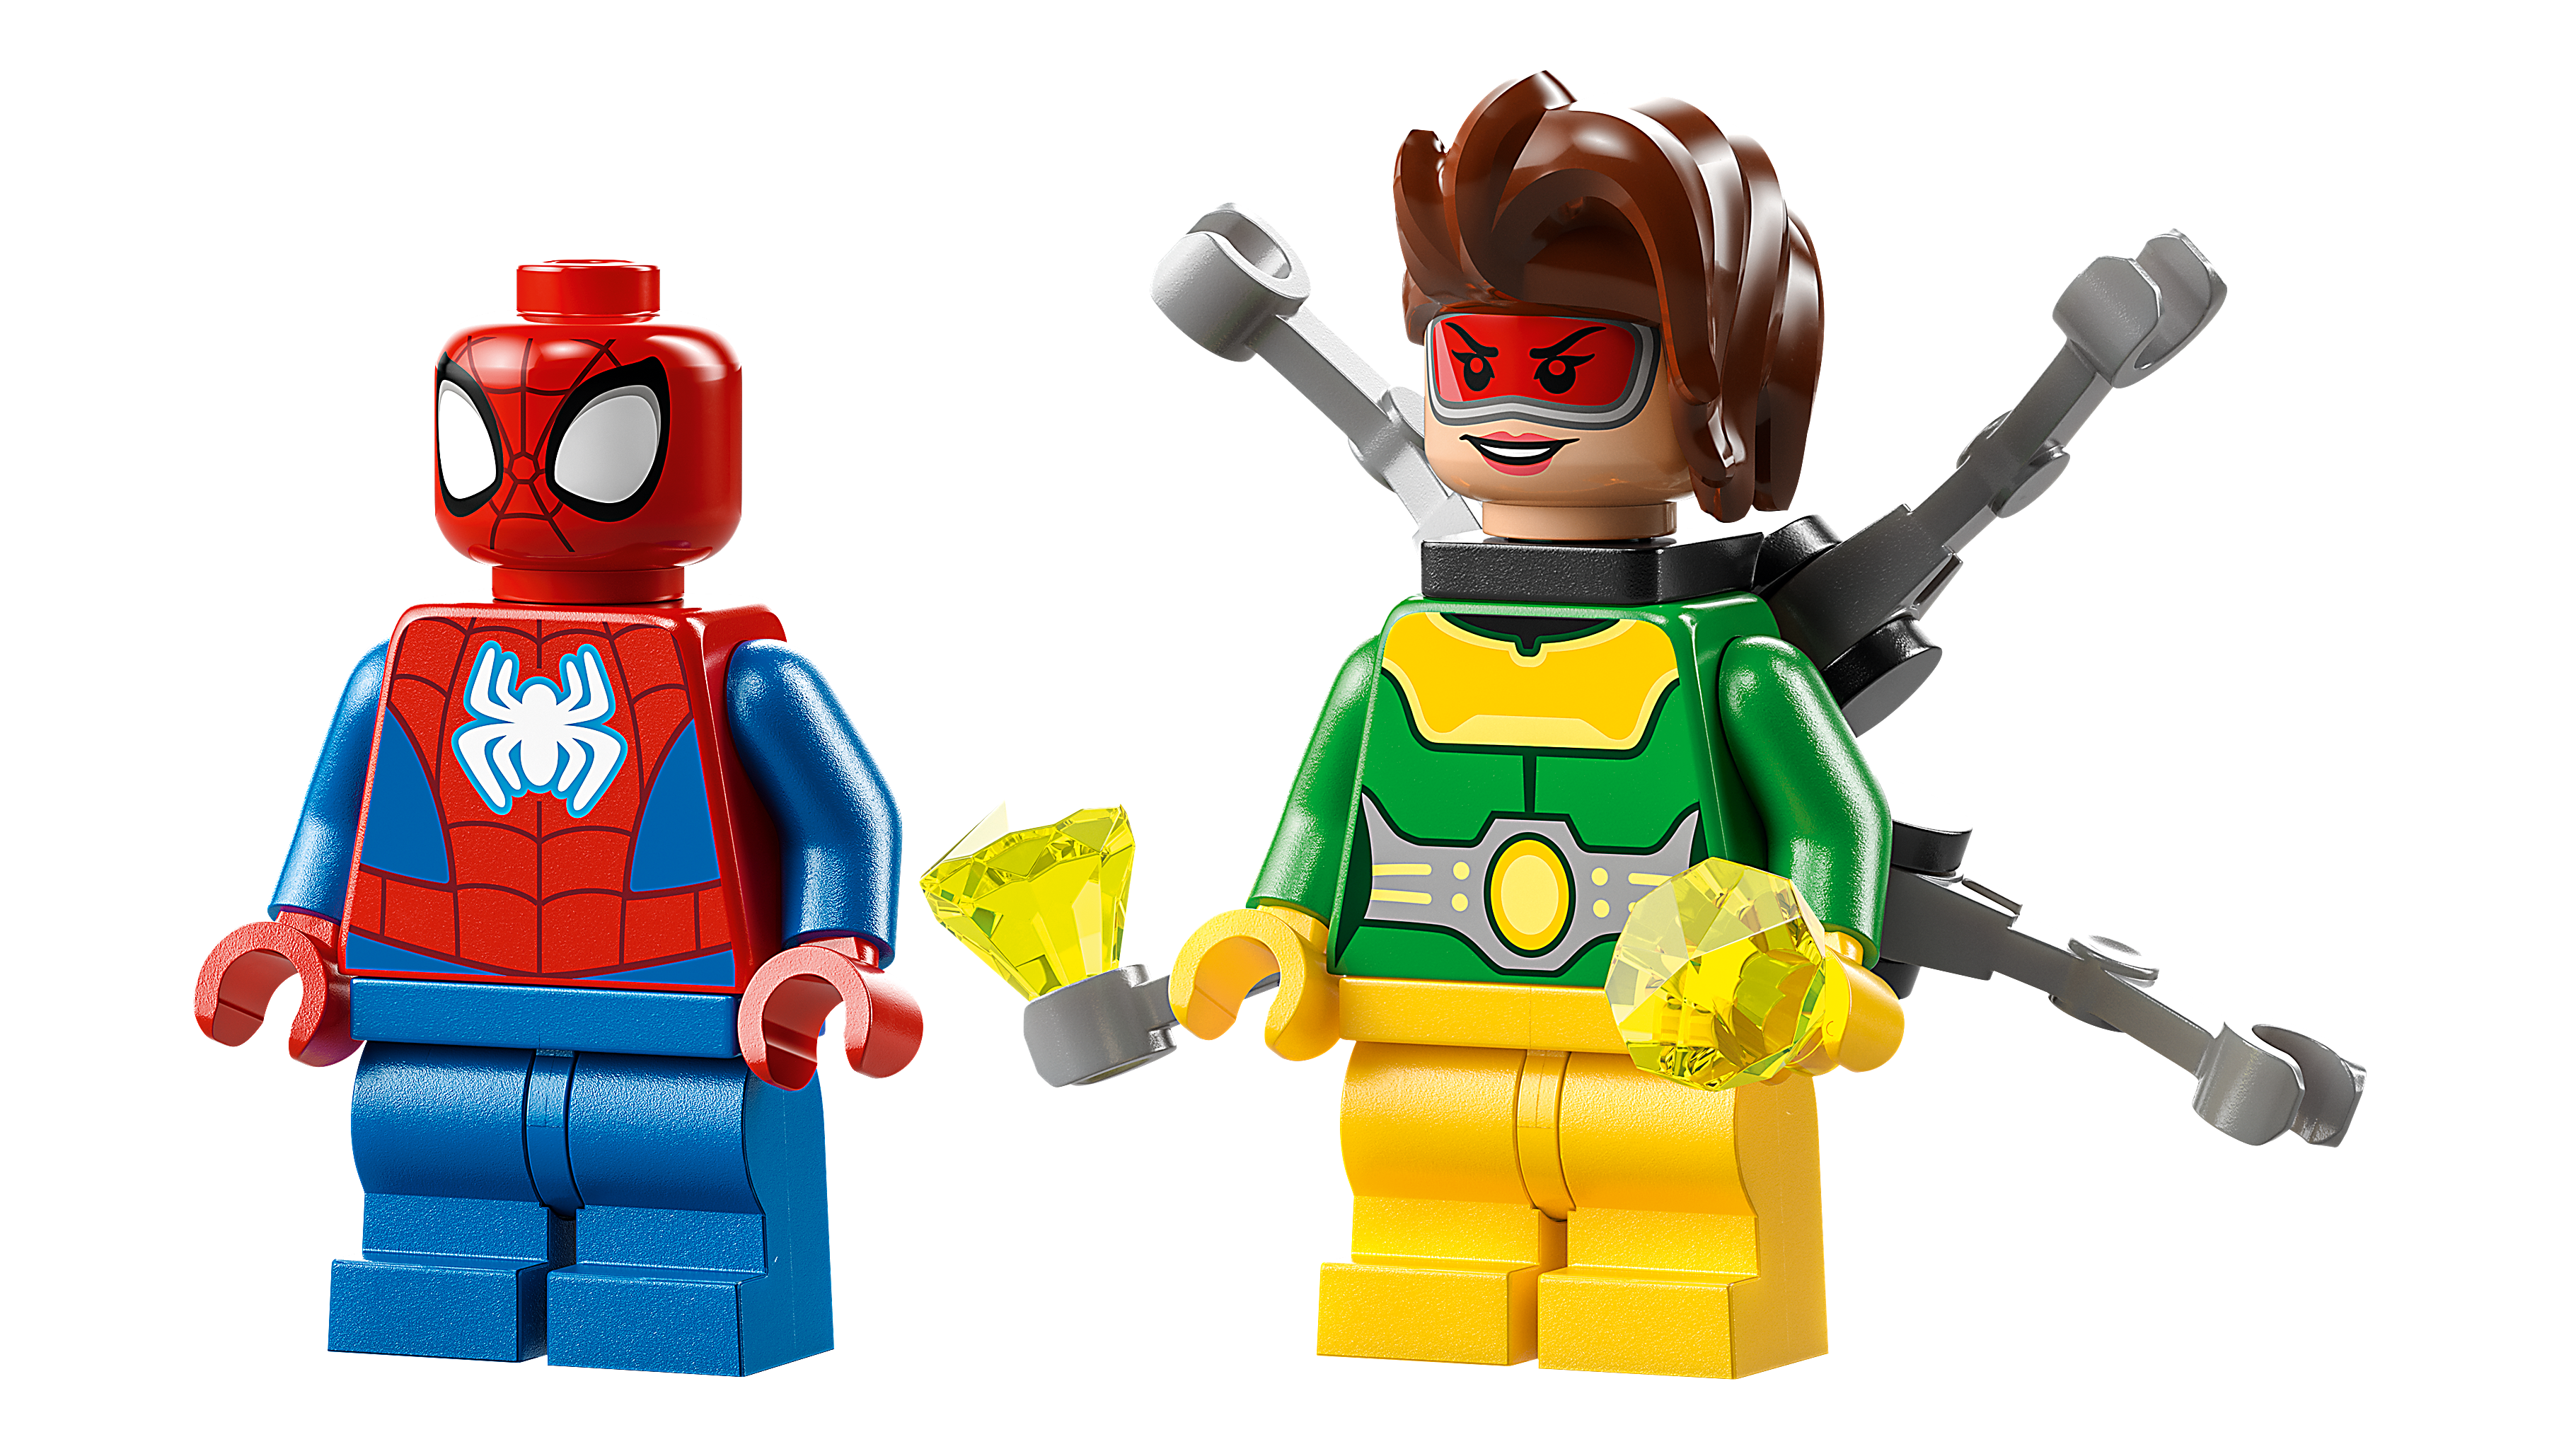 LEGO® Super Heroes Spider-Man's Car and Doc Ock Set, 10789